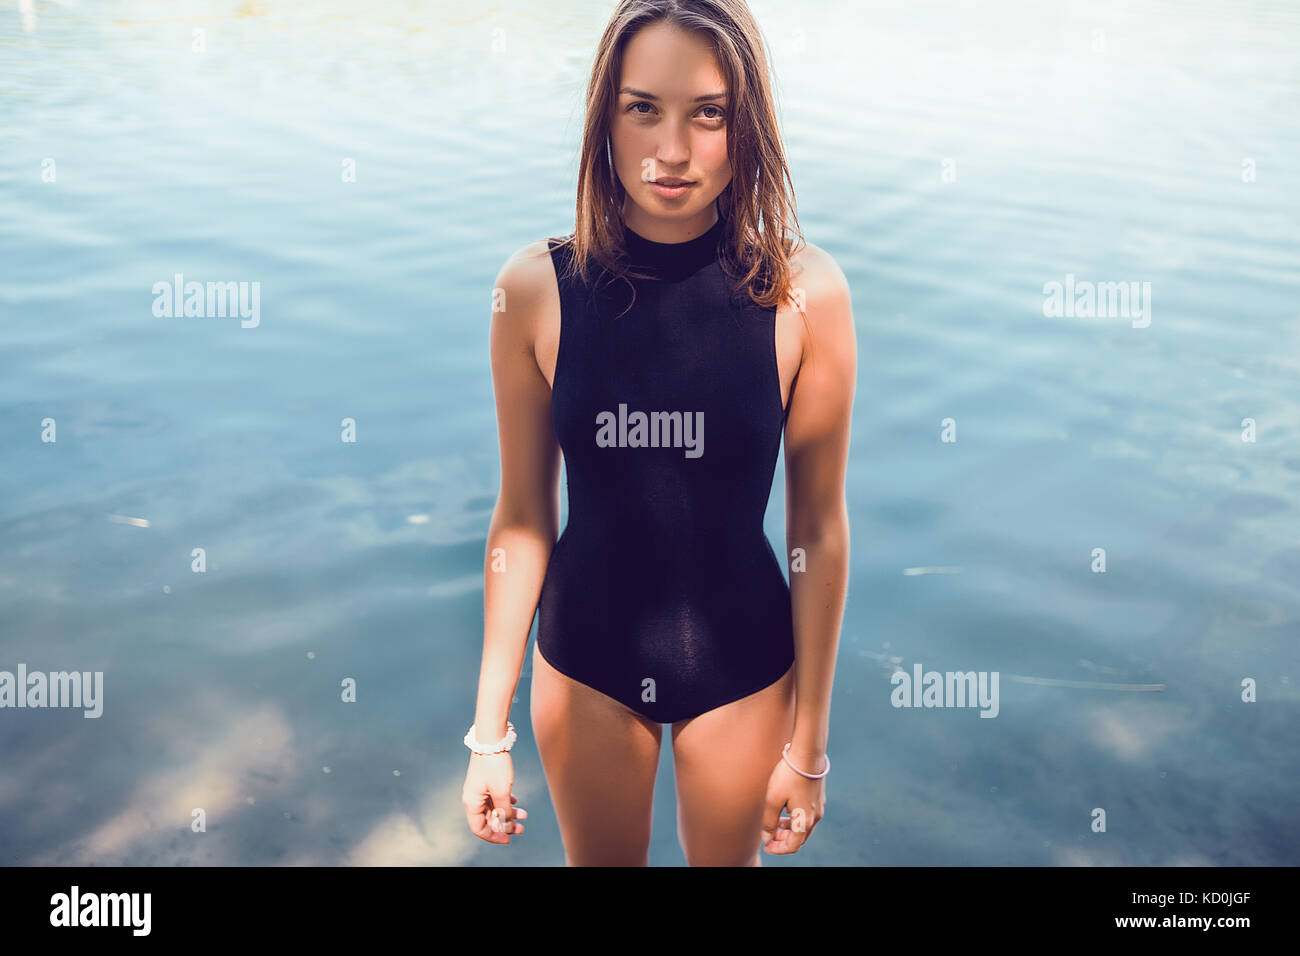 Ritratto di donna che indossa il costume da bagno in piedi in acqua guardando la fotocamera Foto Stock